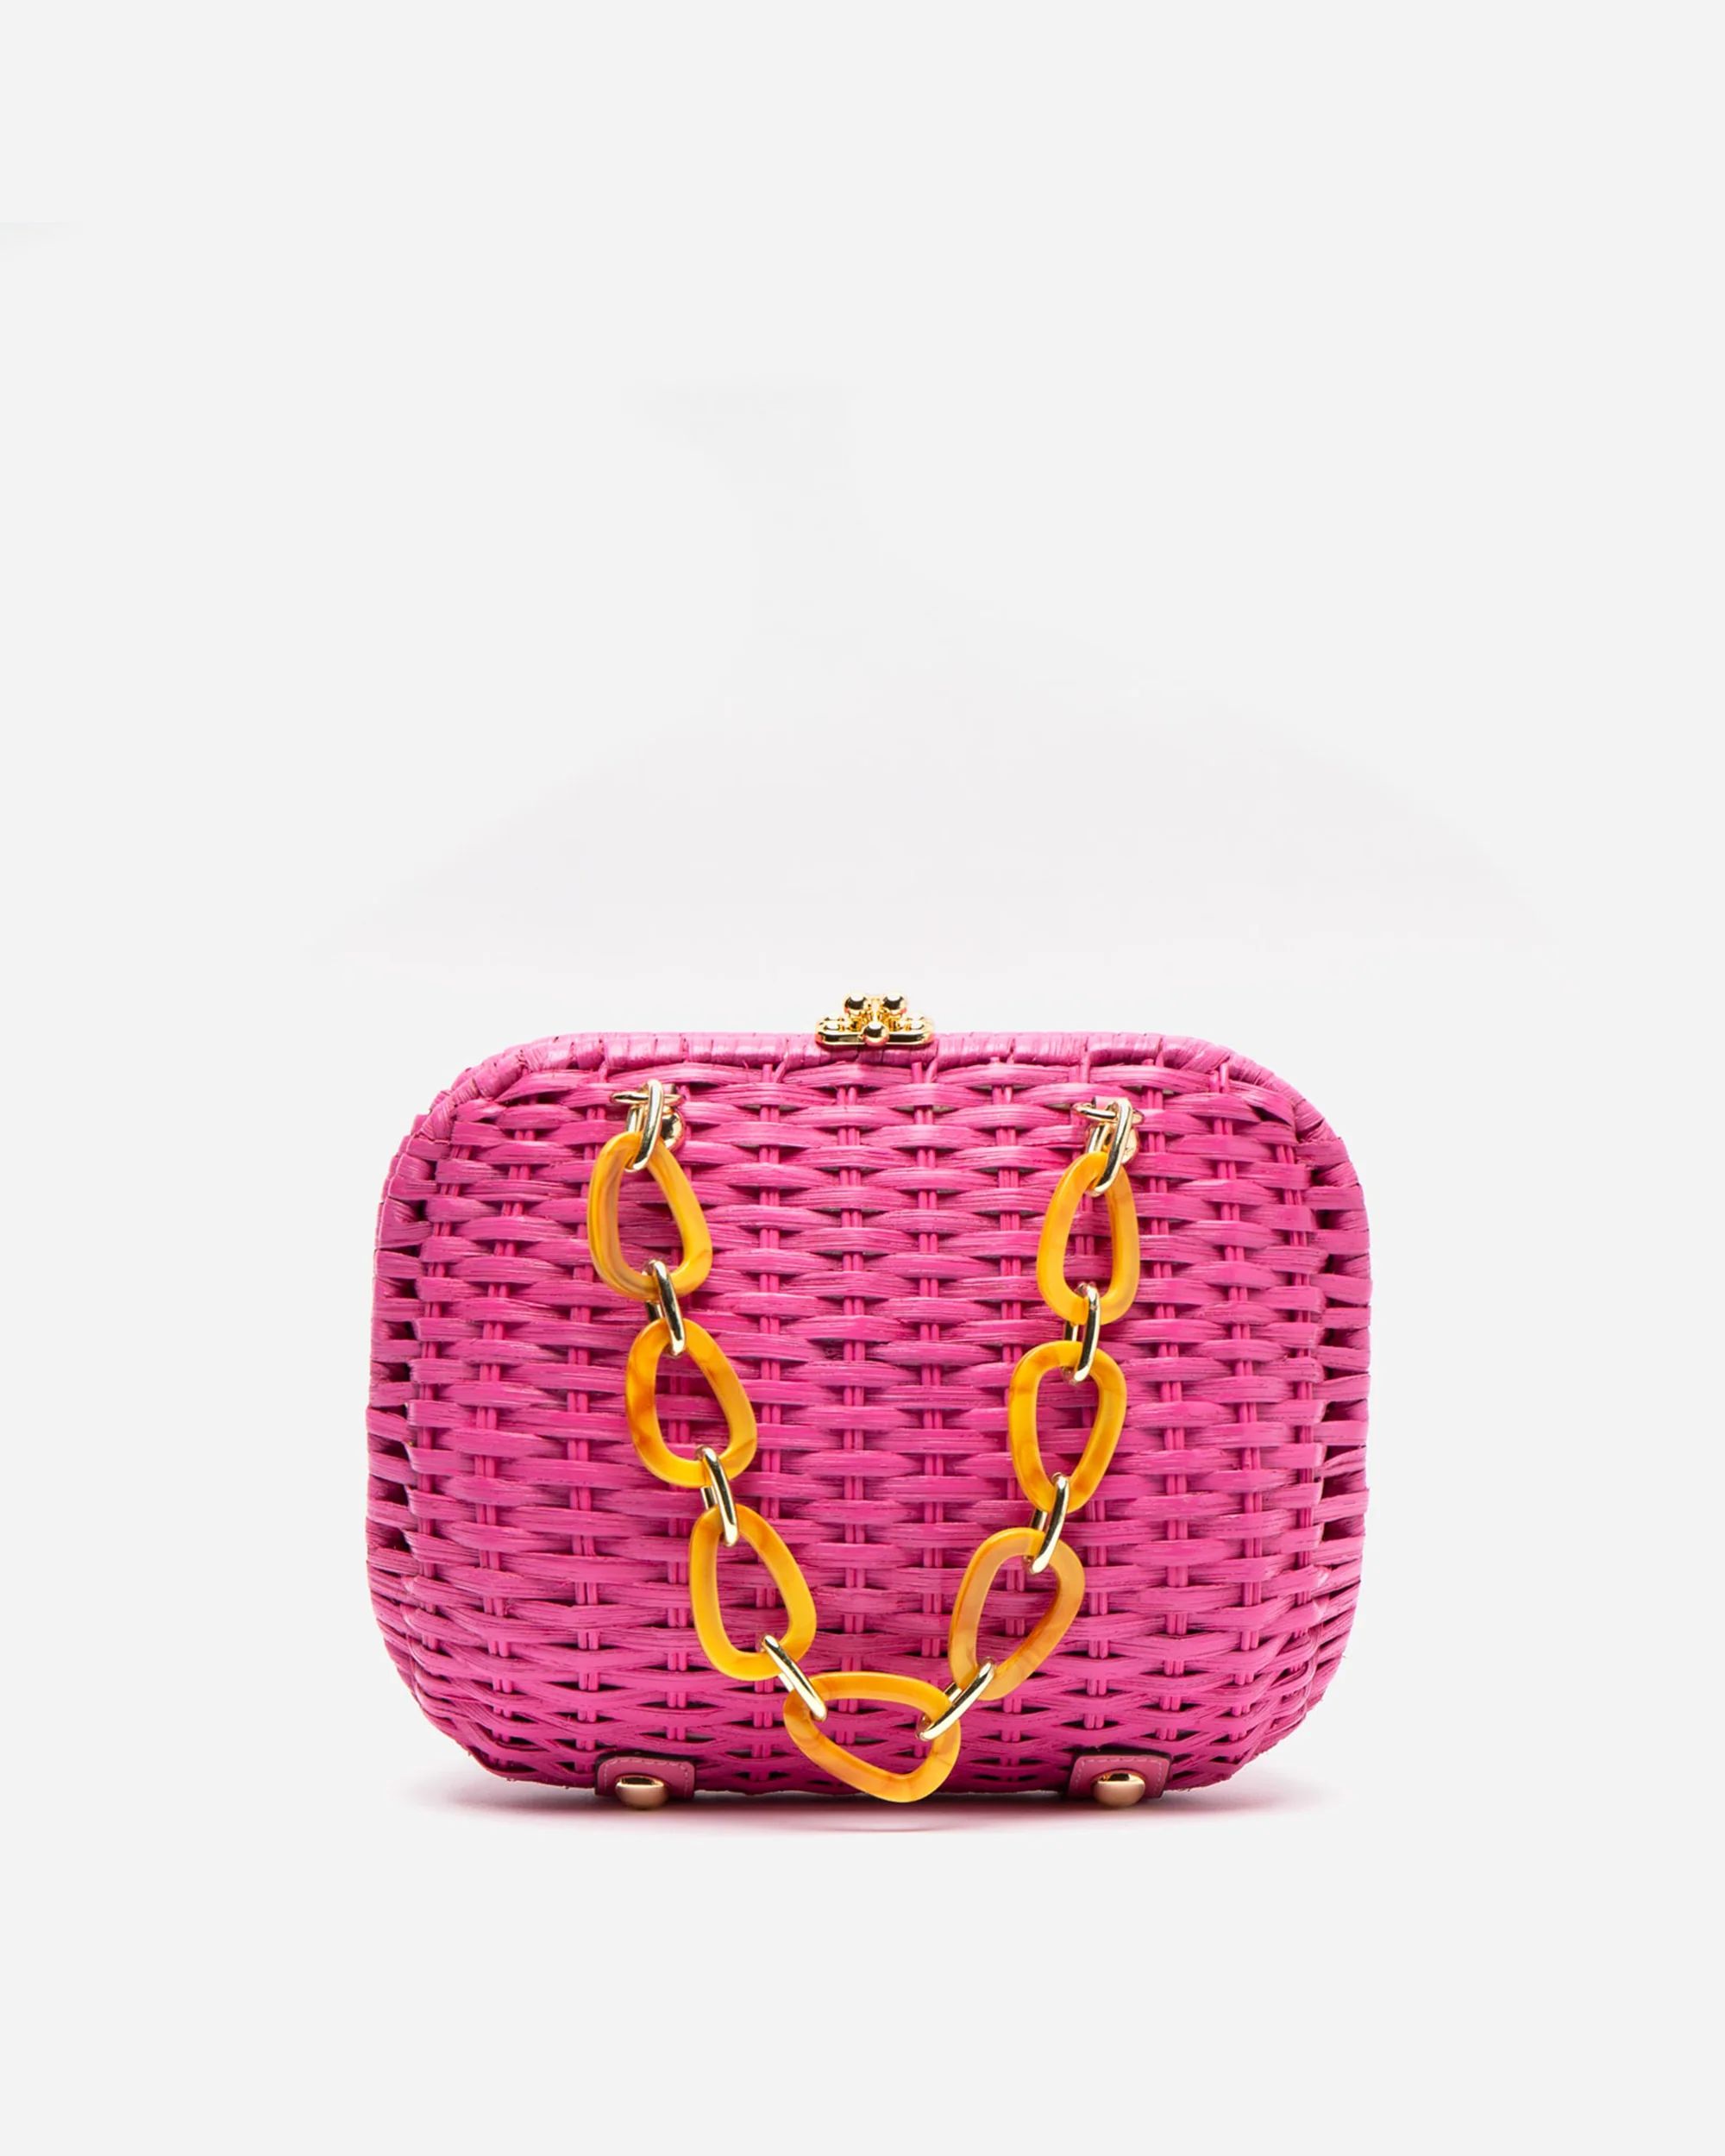 Hen Wicker Basket Pink | Frances Valentine